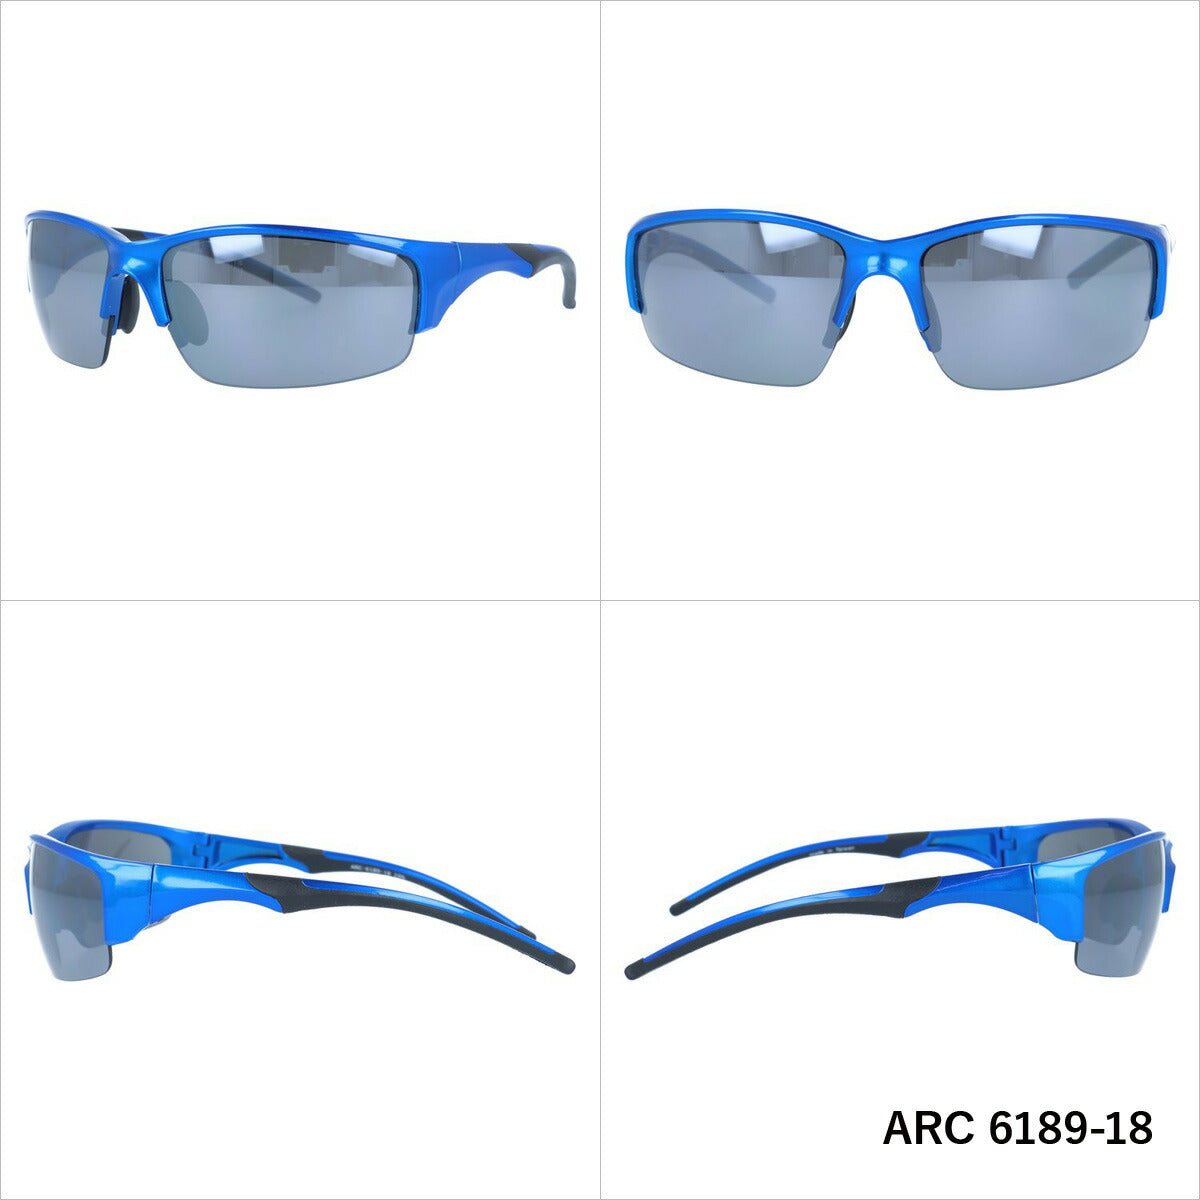 アークスタイル サングラス ミラーレンズ アジアンフィット ARC Style ARC 6189 全2カラー 60サイズ スポーツ メンズ レディース 紫外線対策 UVカット おしゃれ プレゼント ギフト